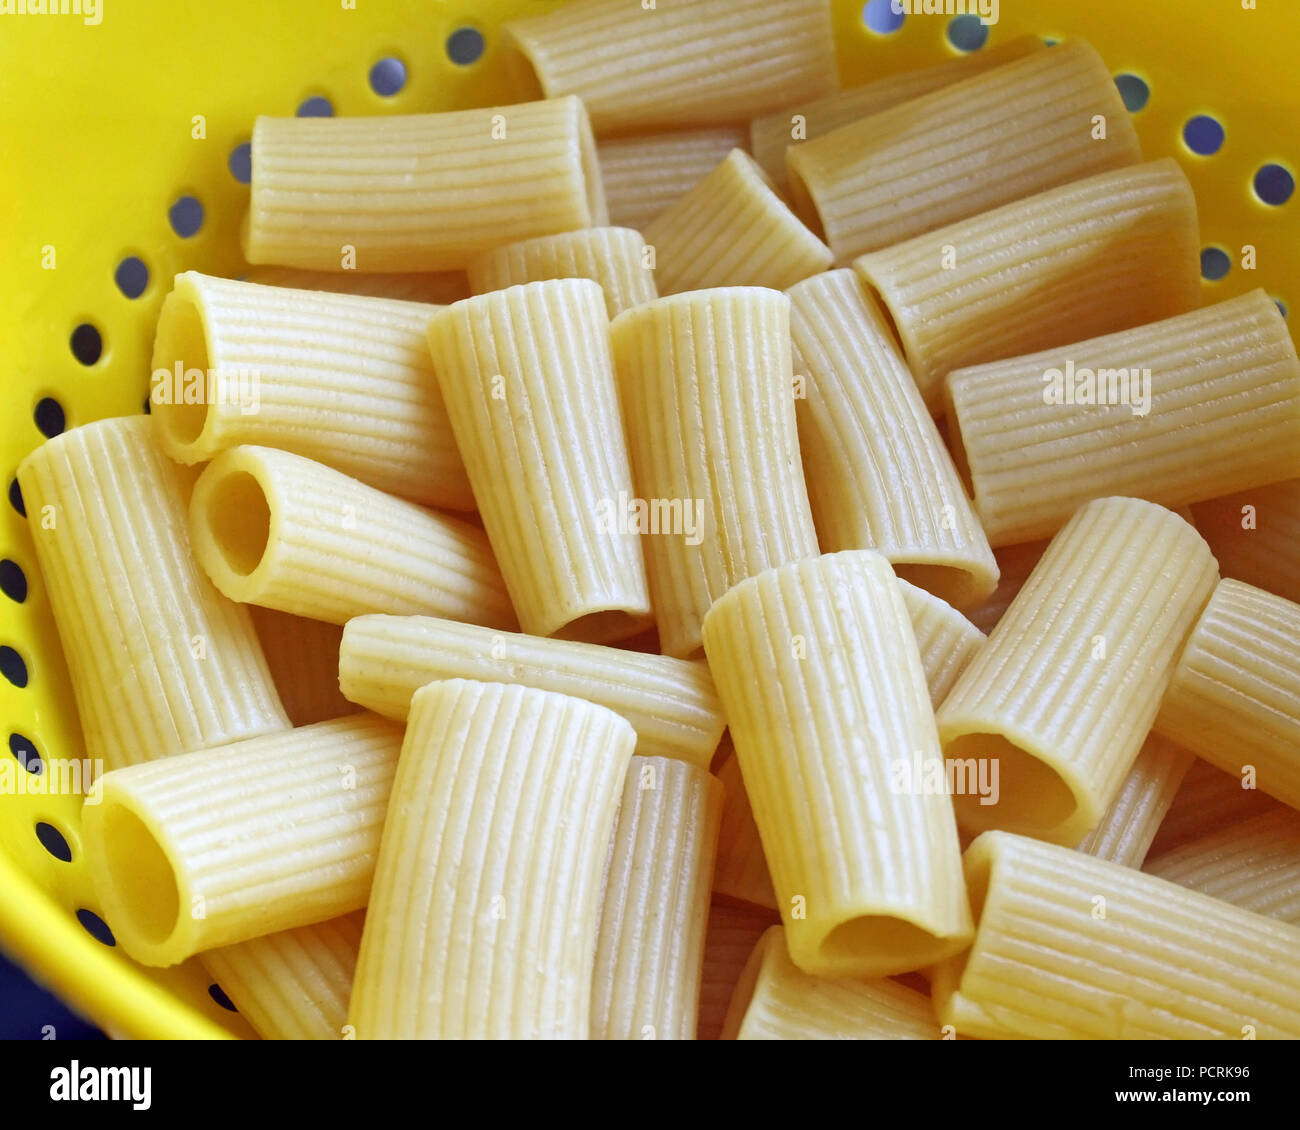 Abgelassen und gekochten Rigatoni Nudeln in einem gelben Kunststoff Sieb Stockfoto